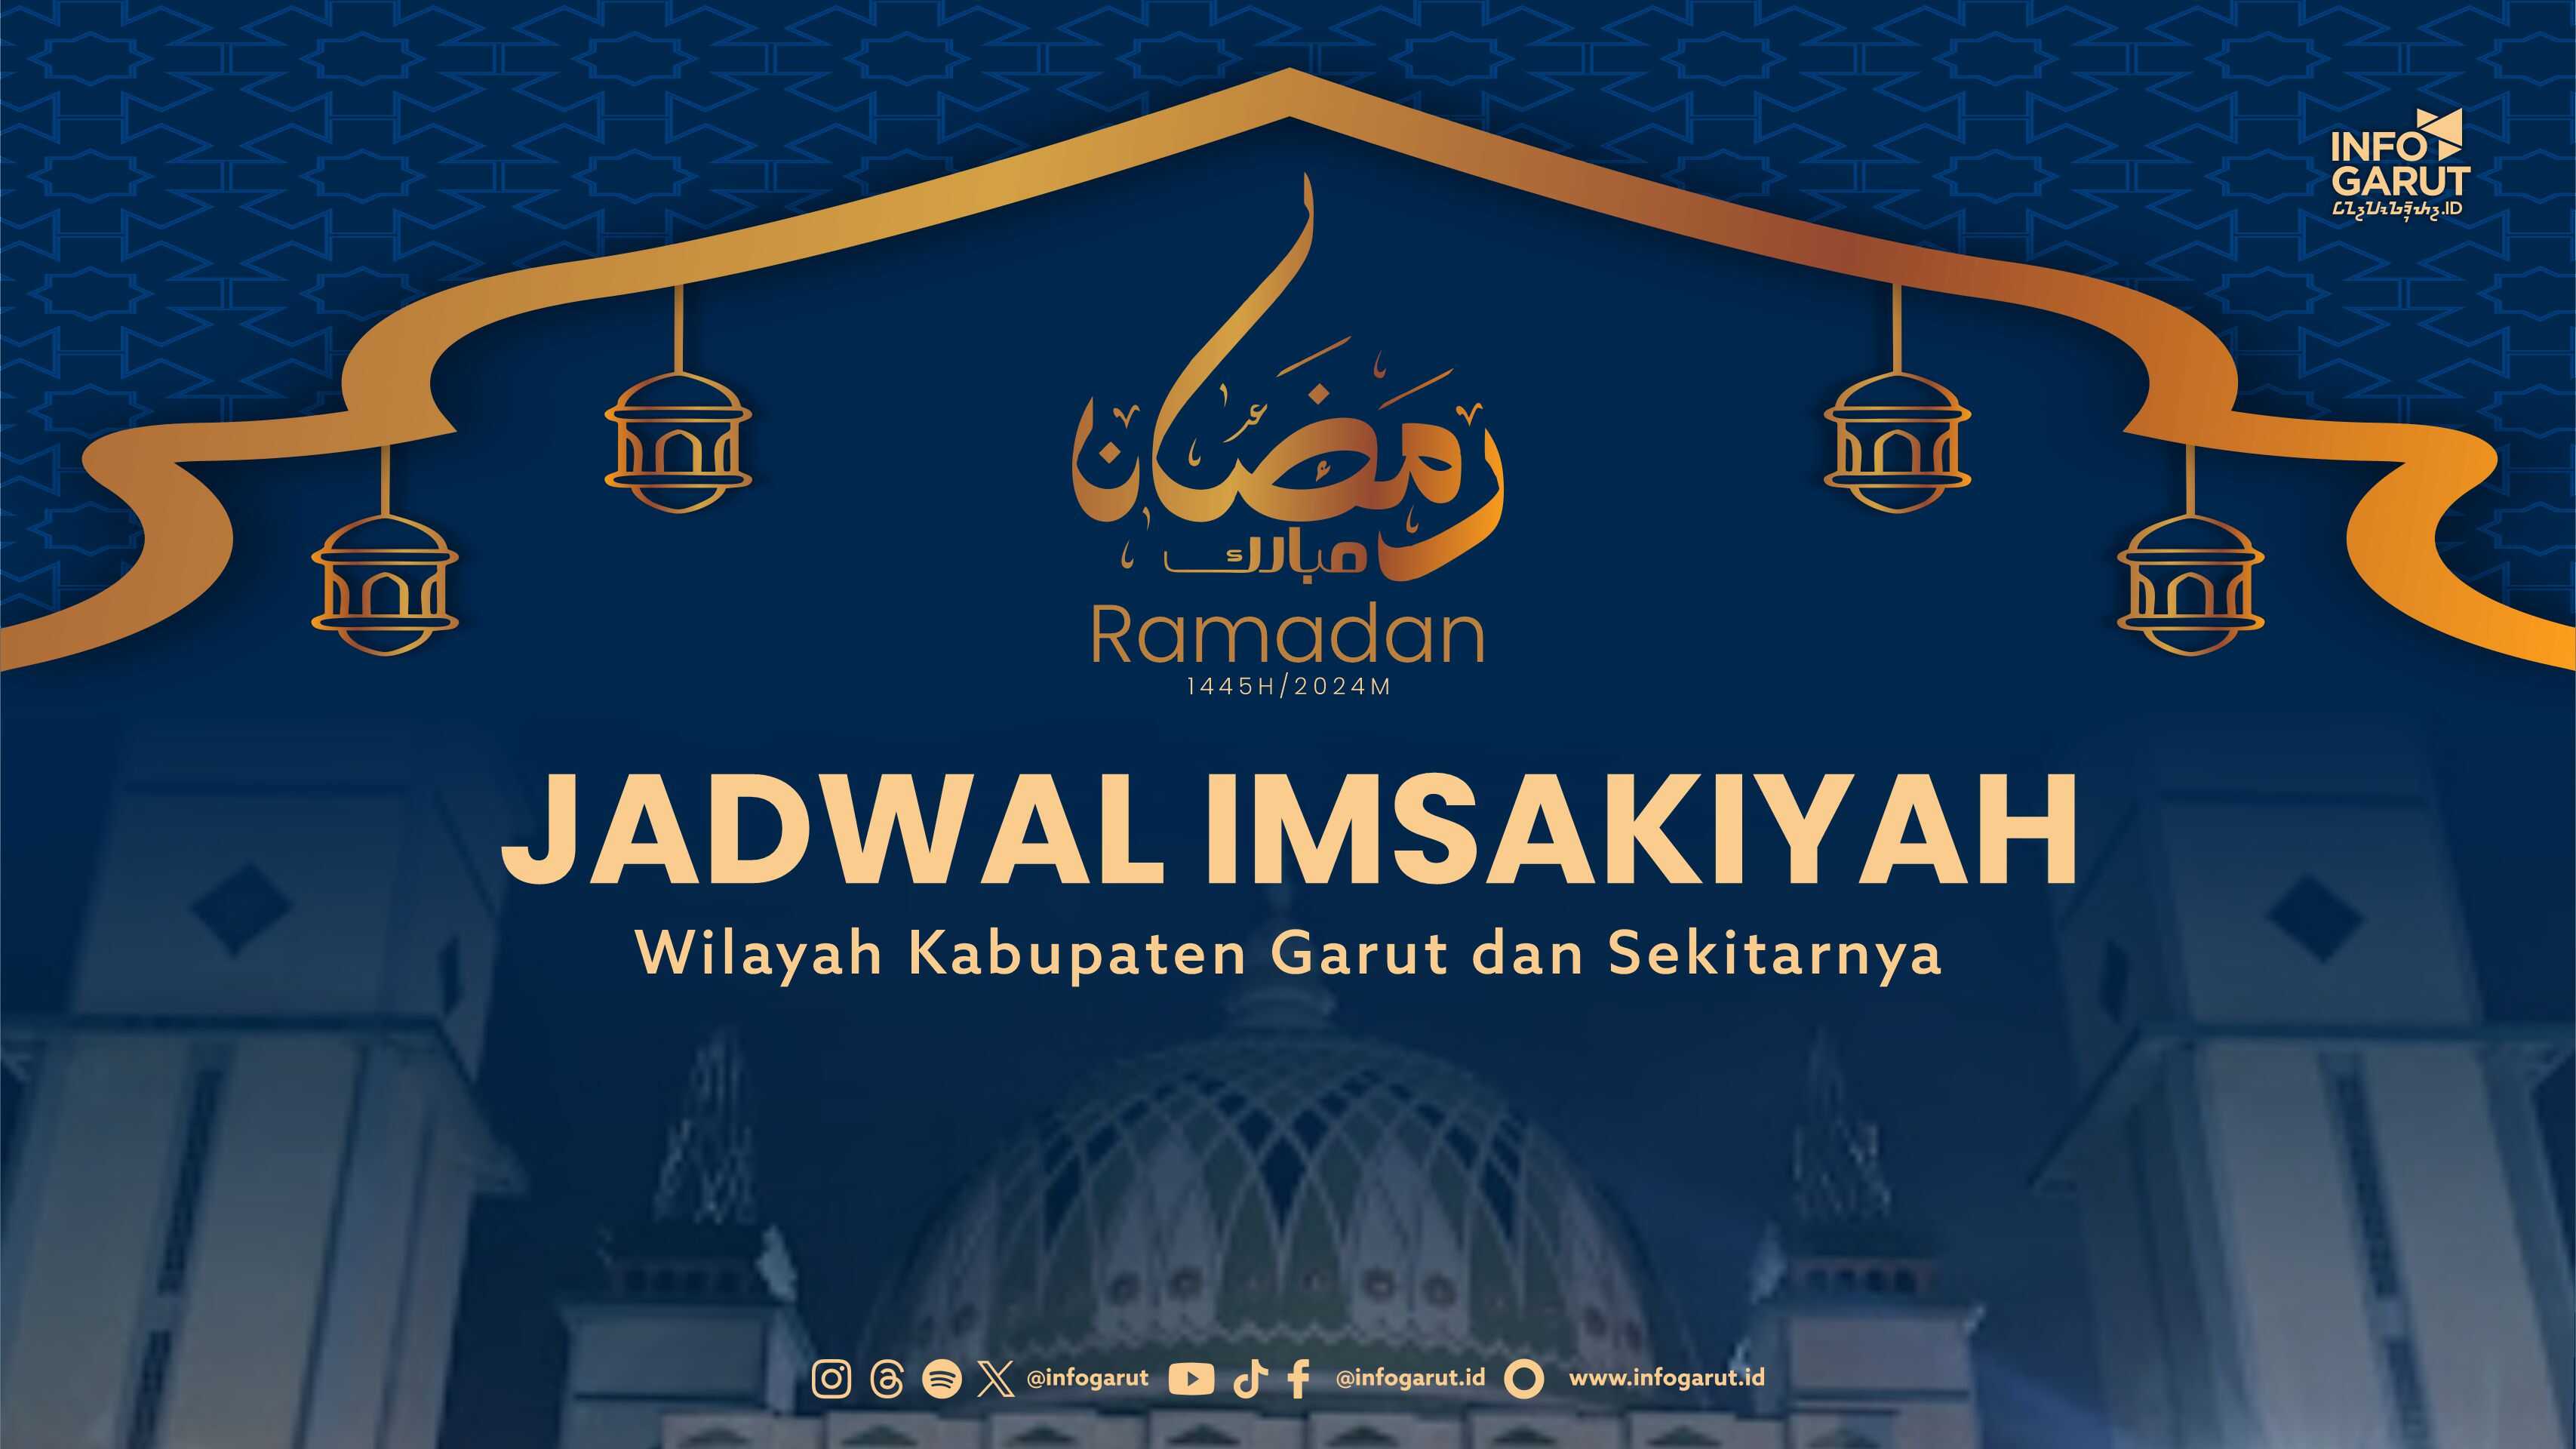 Download Jadwal Imsakiyah Ramadan 1445 H untuk Wilayah Garut dan Sekitarnya